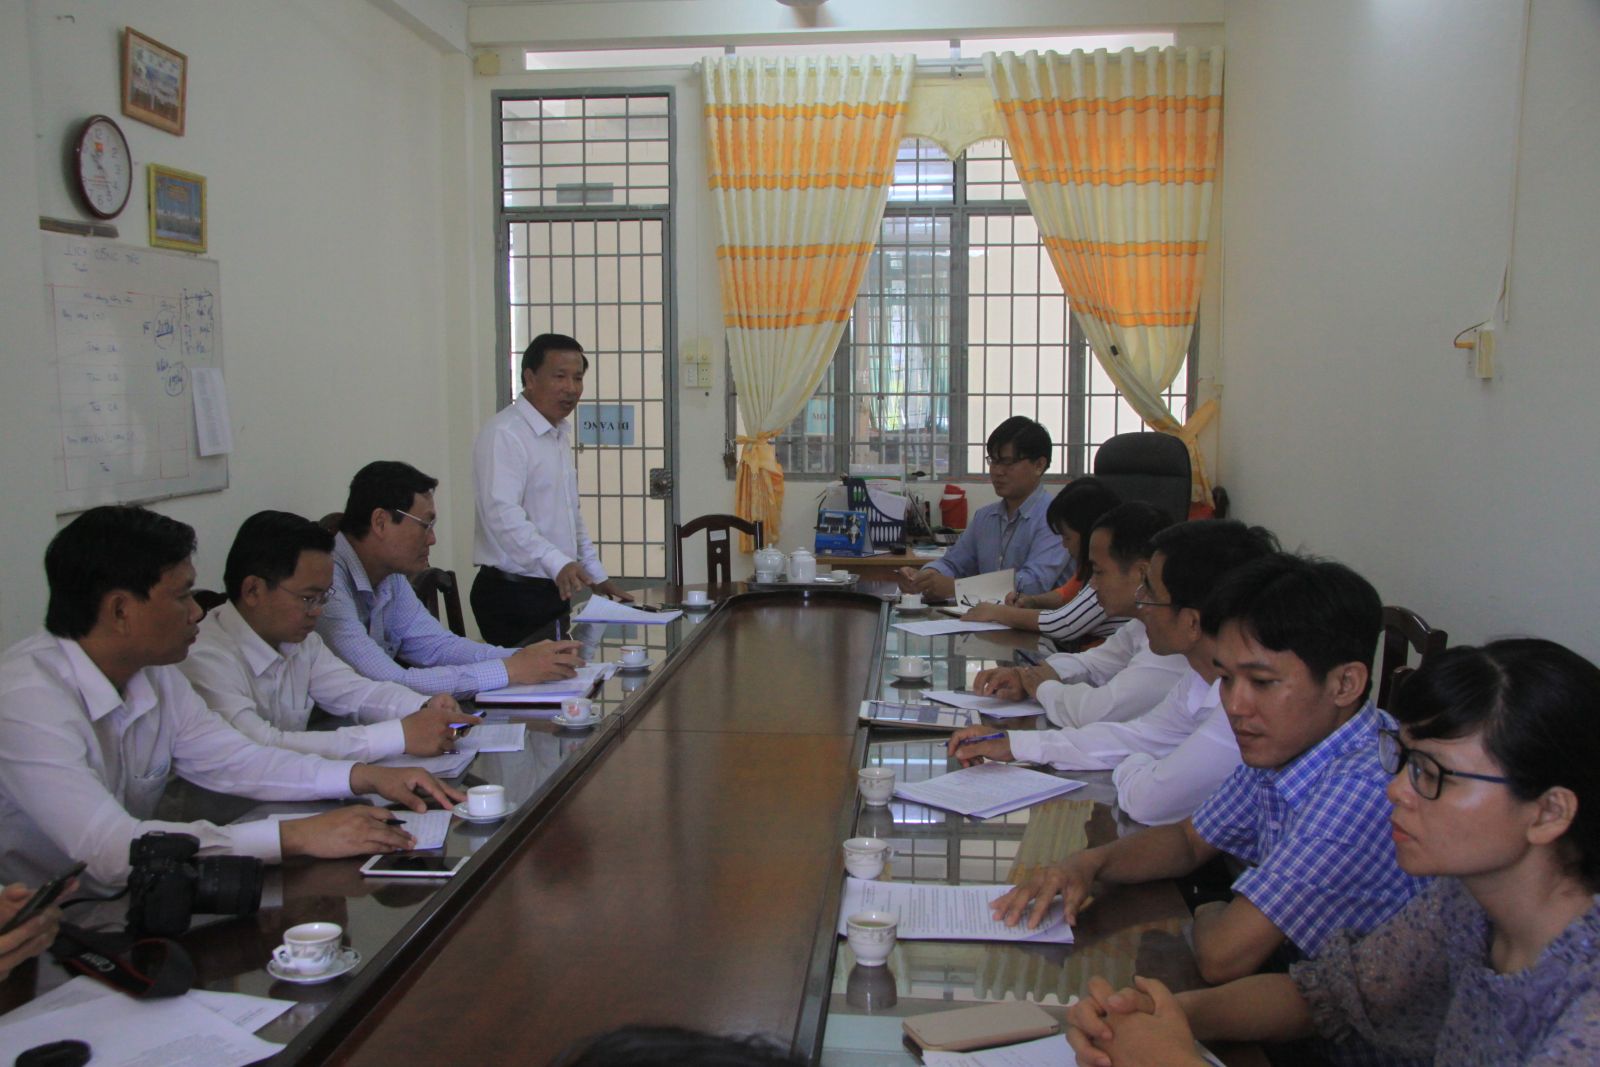 Phó Chủ tịch UBND tỉnh, Trưởng ban Tổ chức kỳ thi tốt nghiệp THPT năm 2020 tỉnh - Nguyễn Văn Út kiểm tra các điểm thi